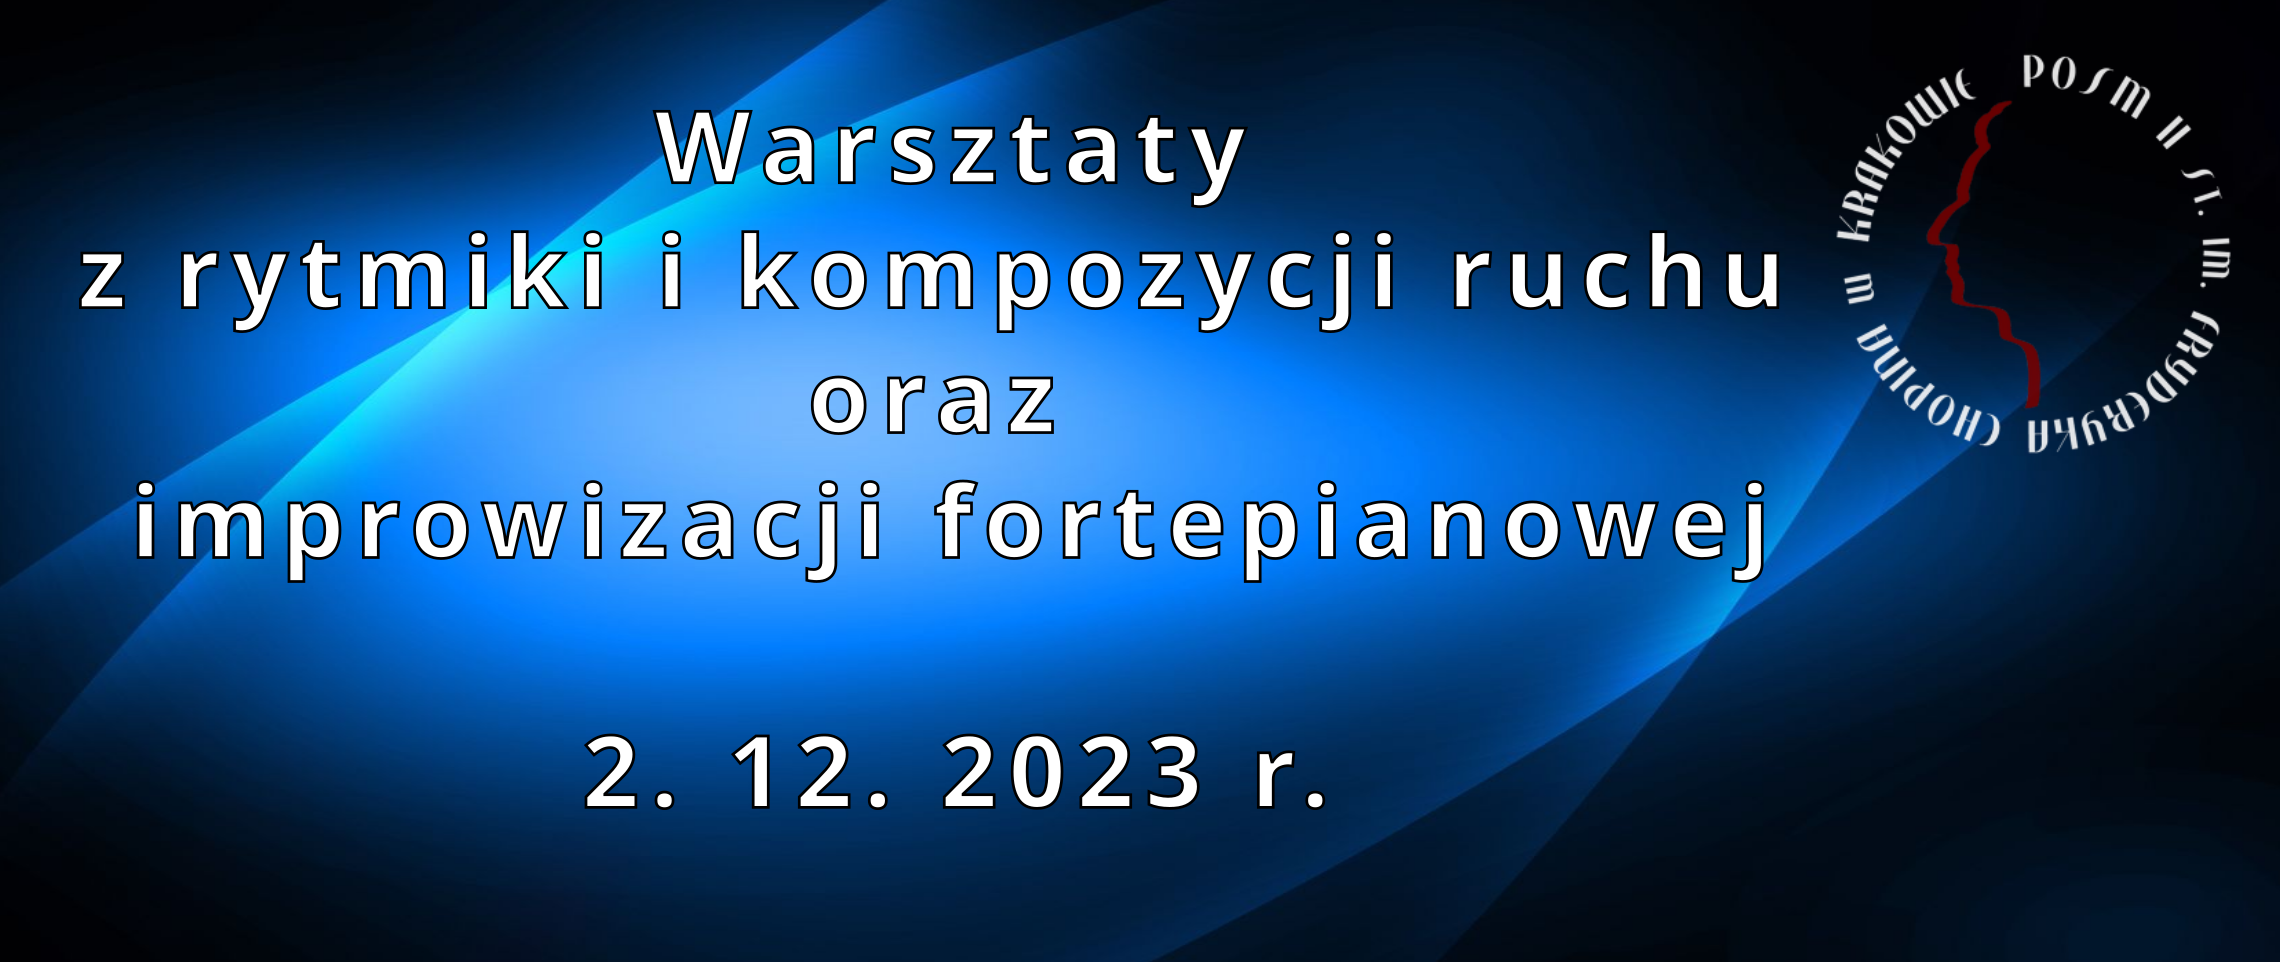 Warsztaty z rytmiki i kompozycji ruchu oraz improwizacji fortepianowej - 2. 12. 2023 r.